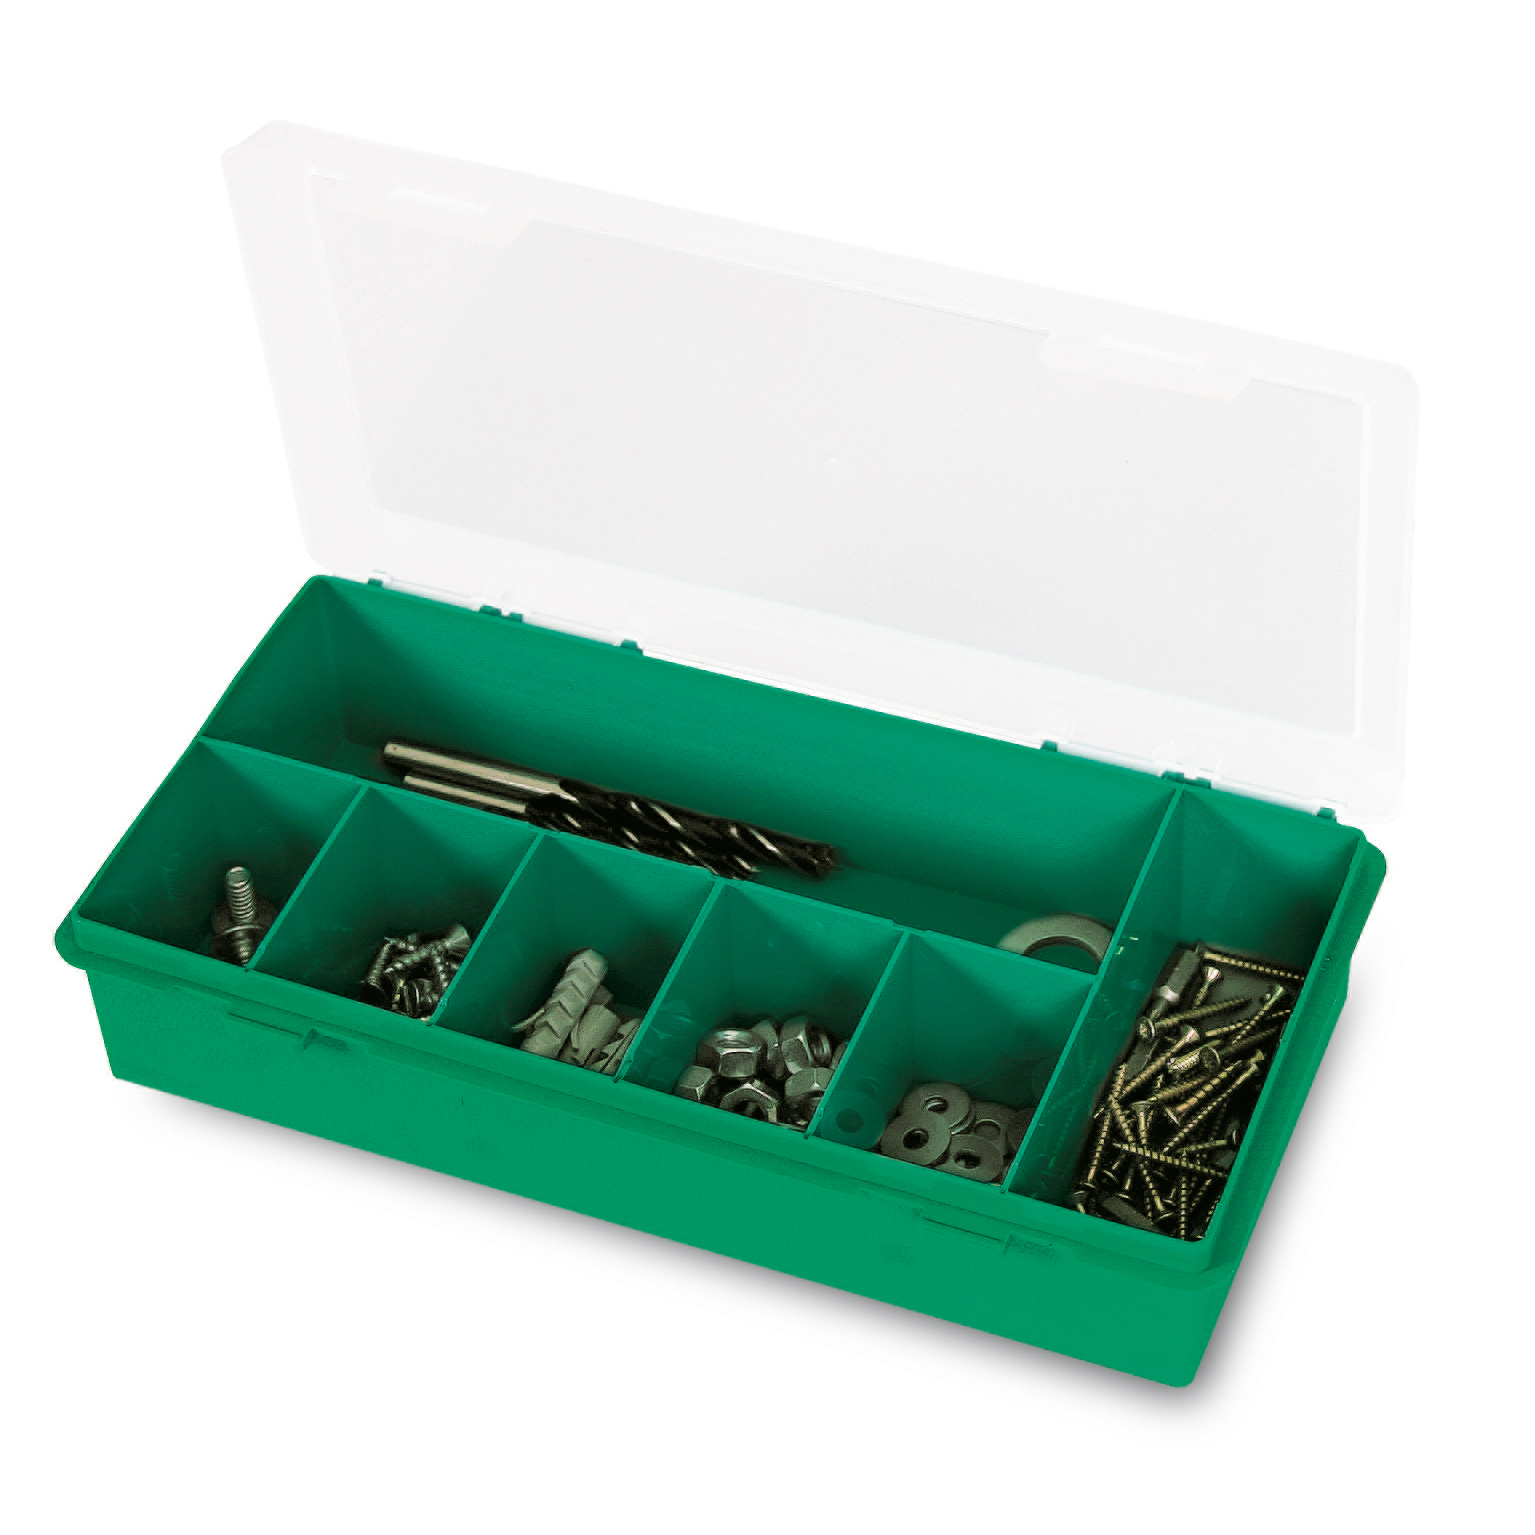 Органайзер Tayg Box 11-7 Estuche, для хранения мелких предметов, 25х14х5,4 см, зеленый (051104) - фото 2